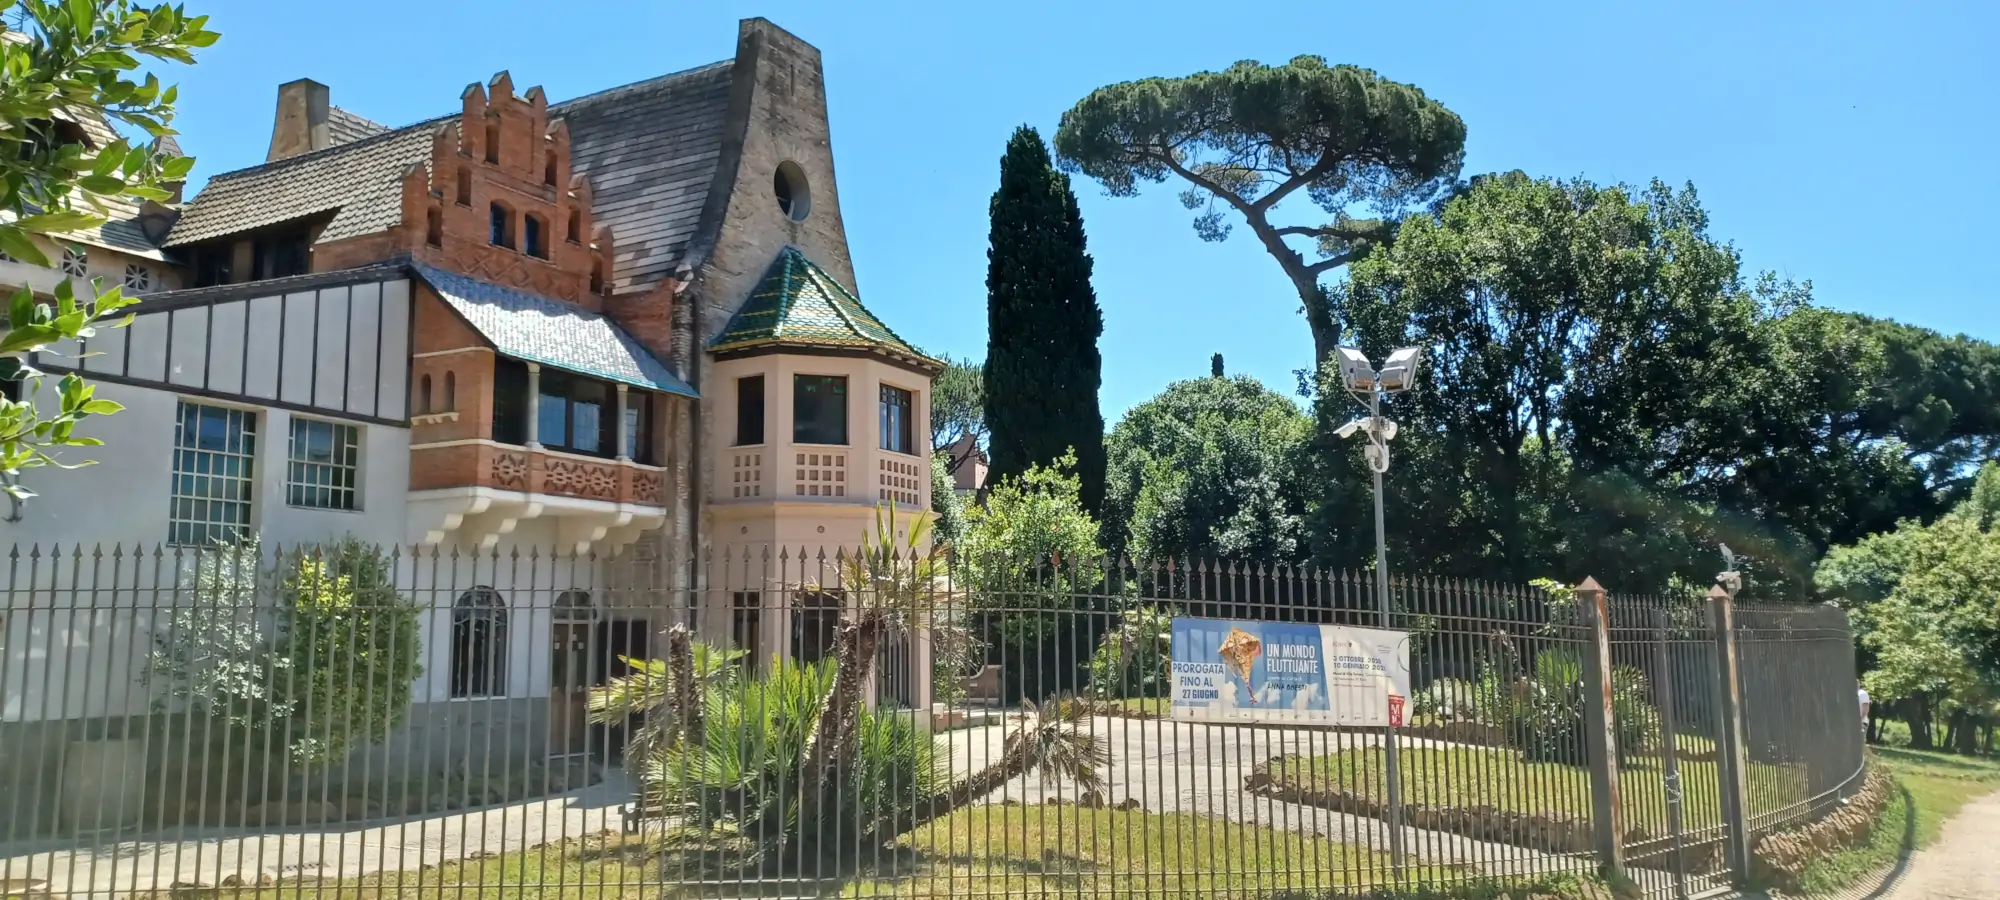 casina civette villa torlonia